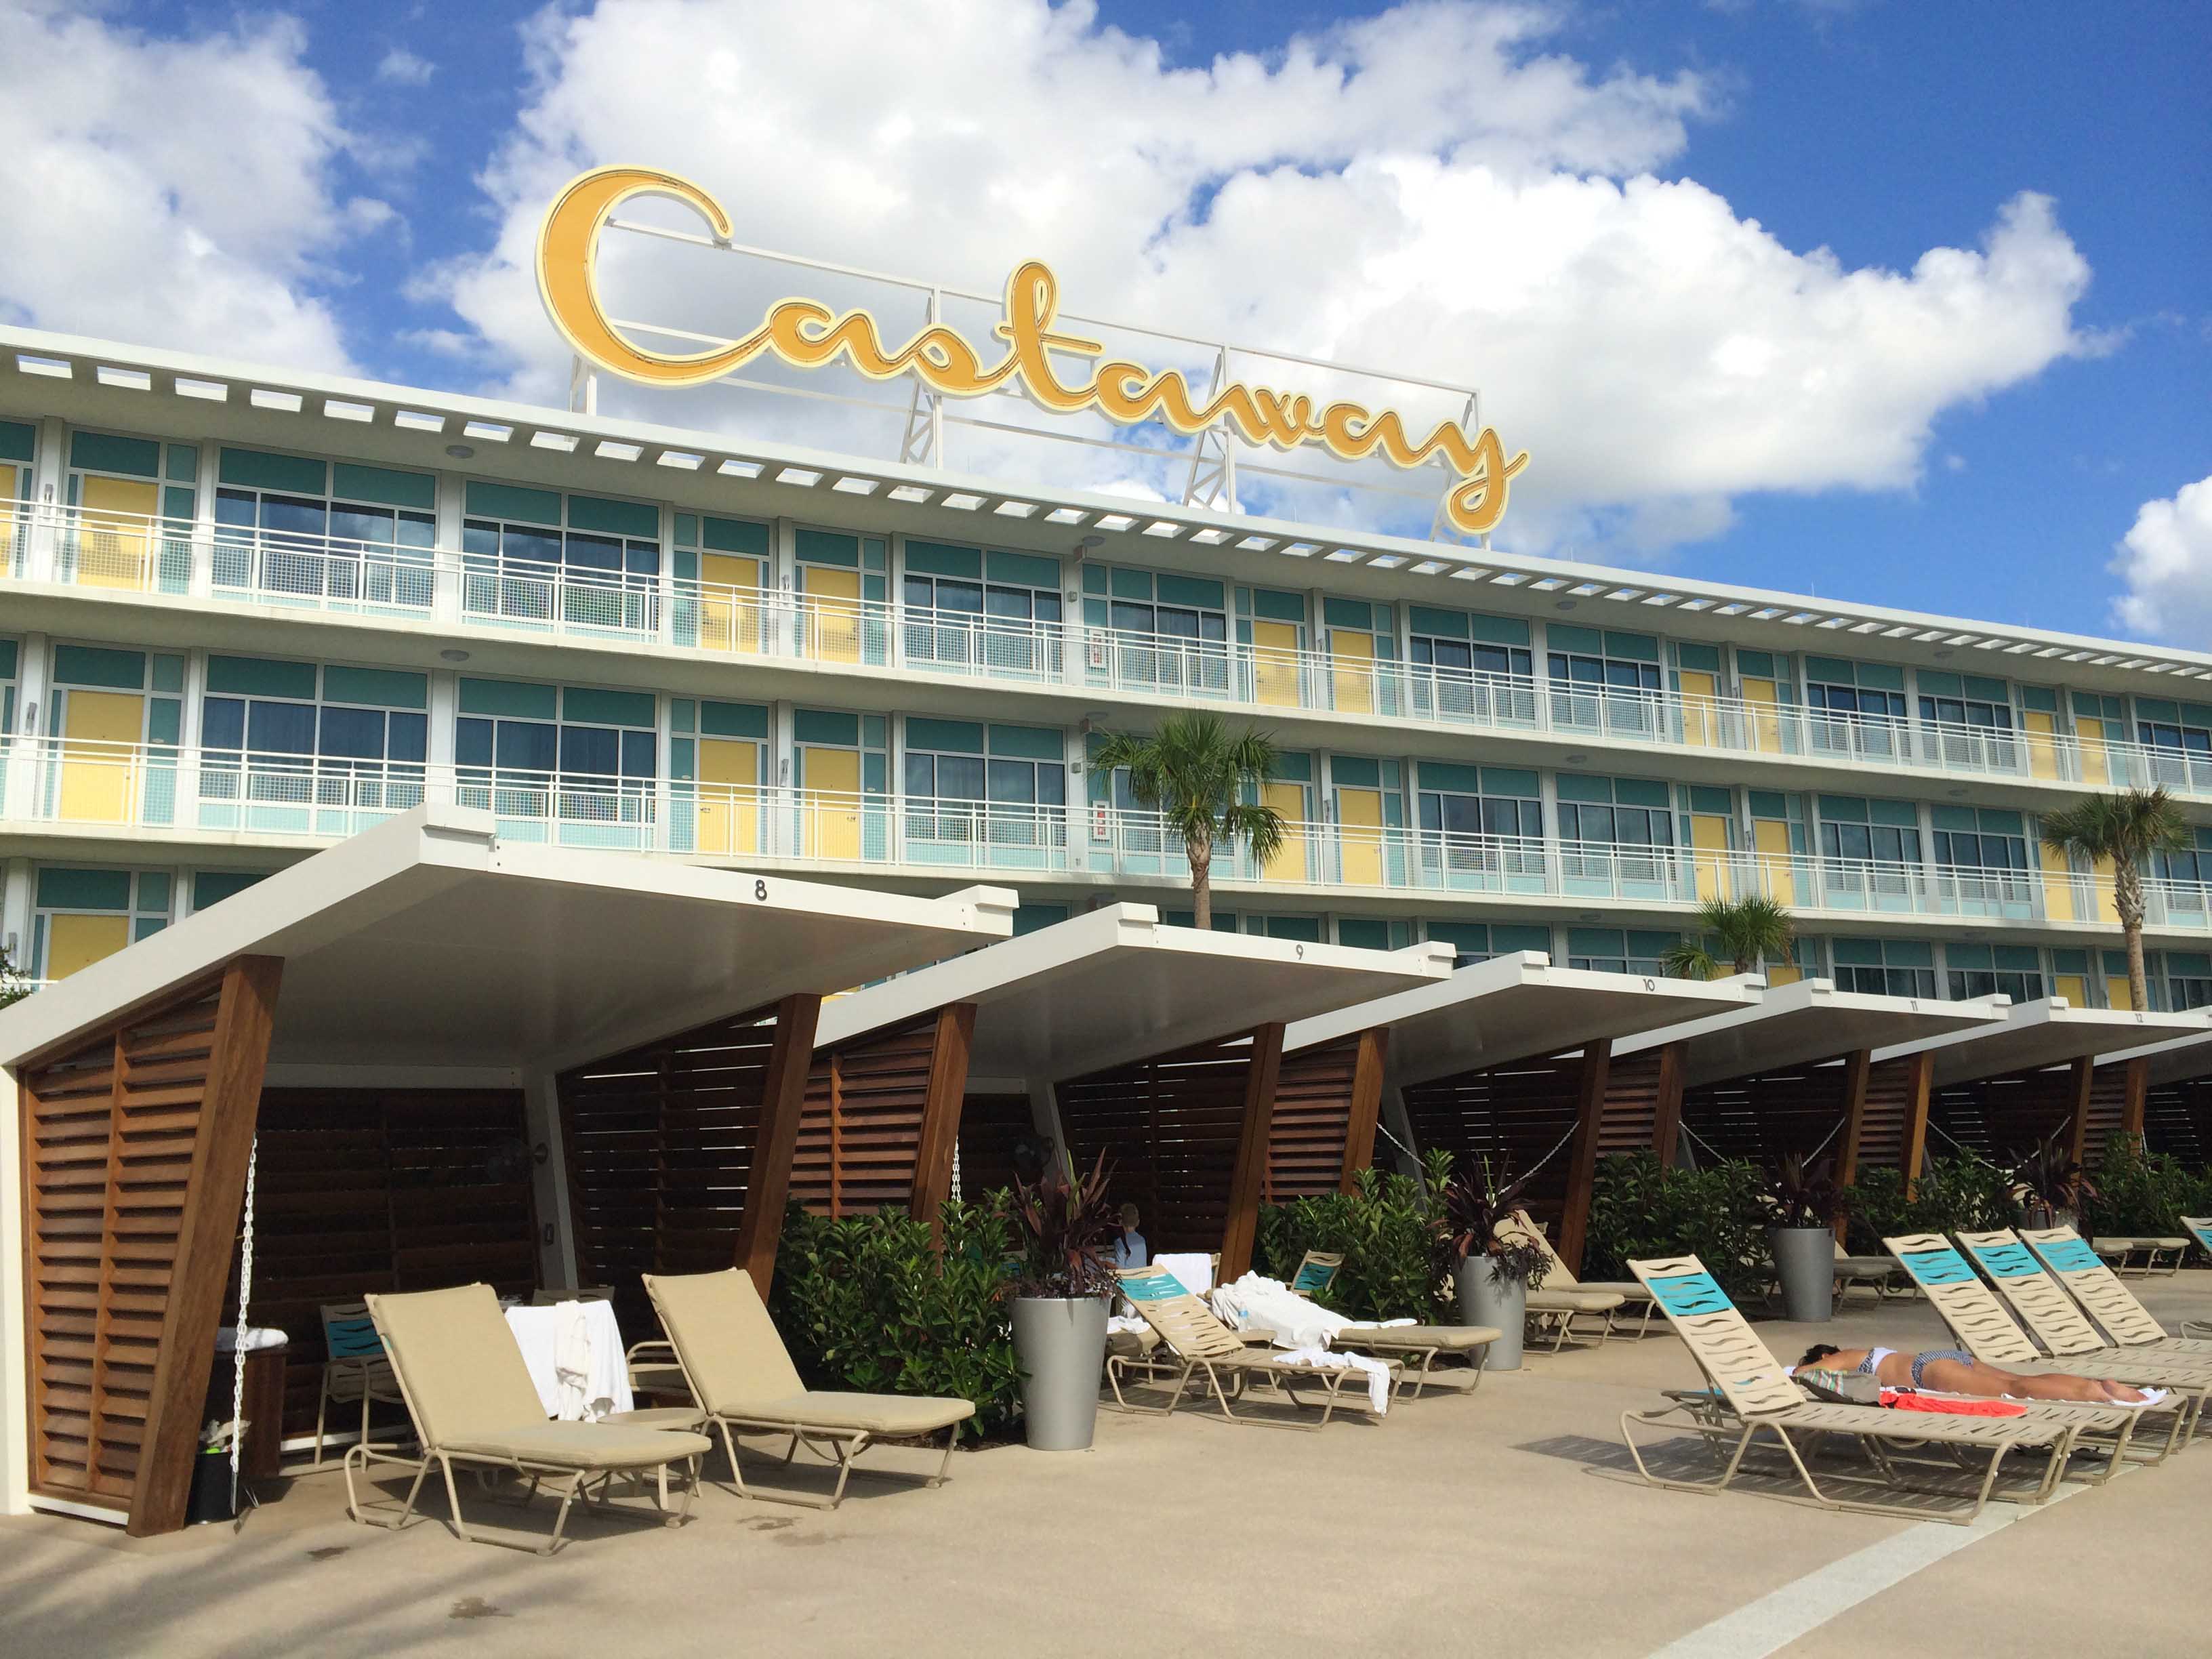 Cabana Beach Resort at Universal Studios Florida